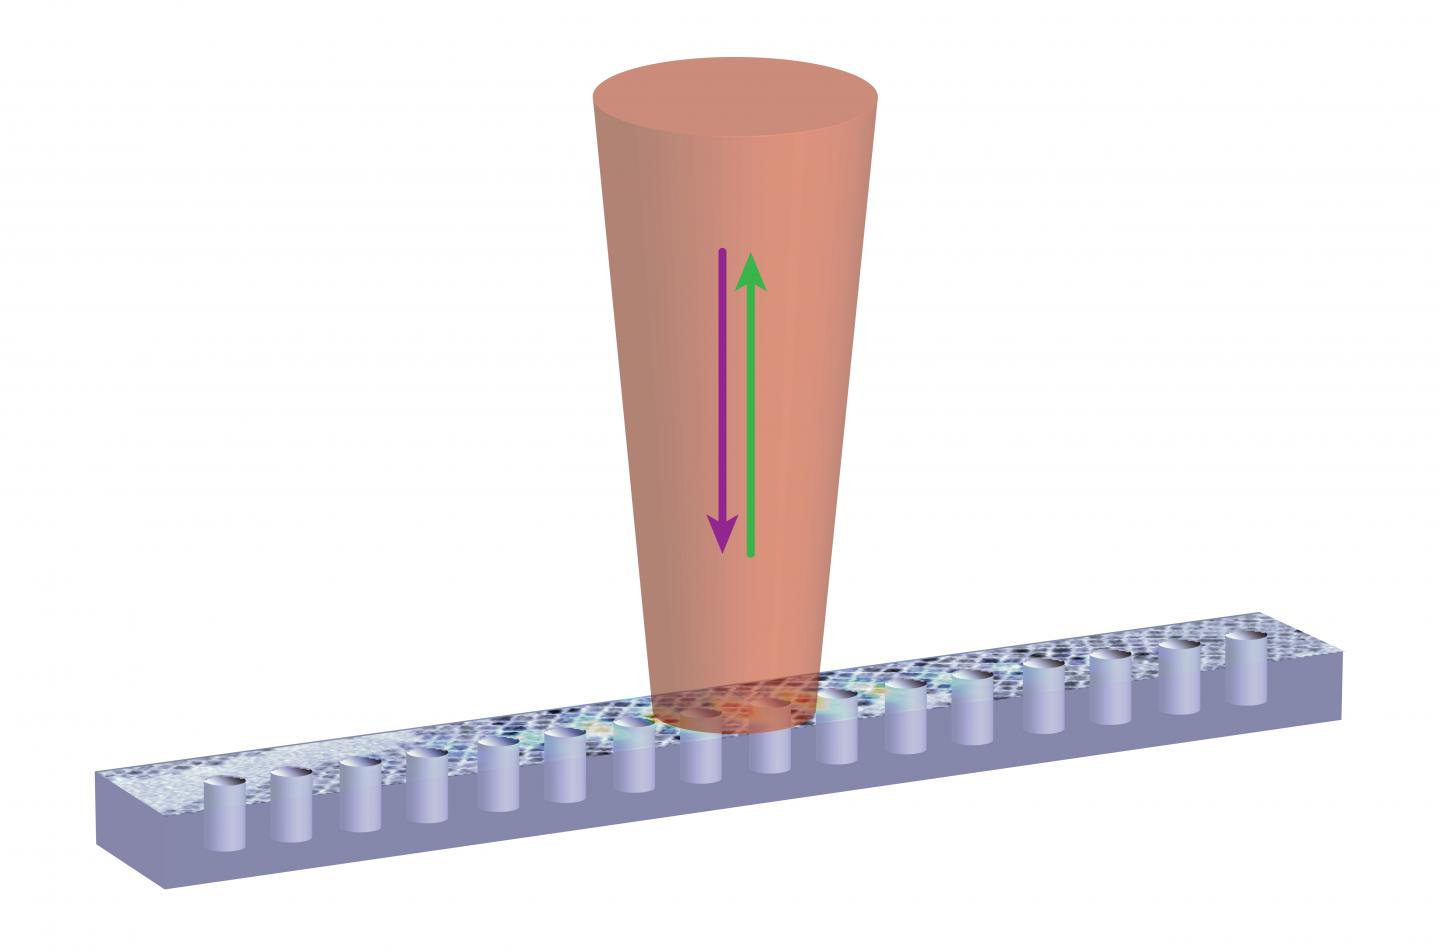 Nanocrystal coupled to nanophotonic cavity for improved emission. University of Maryland.